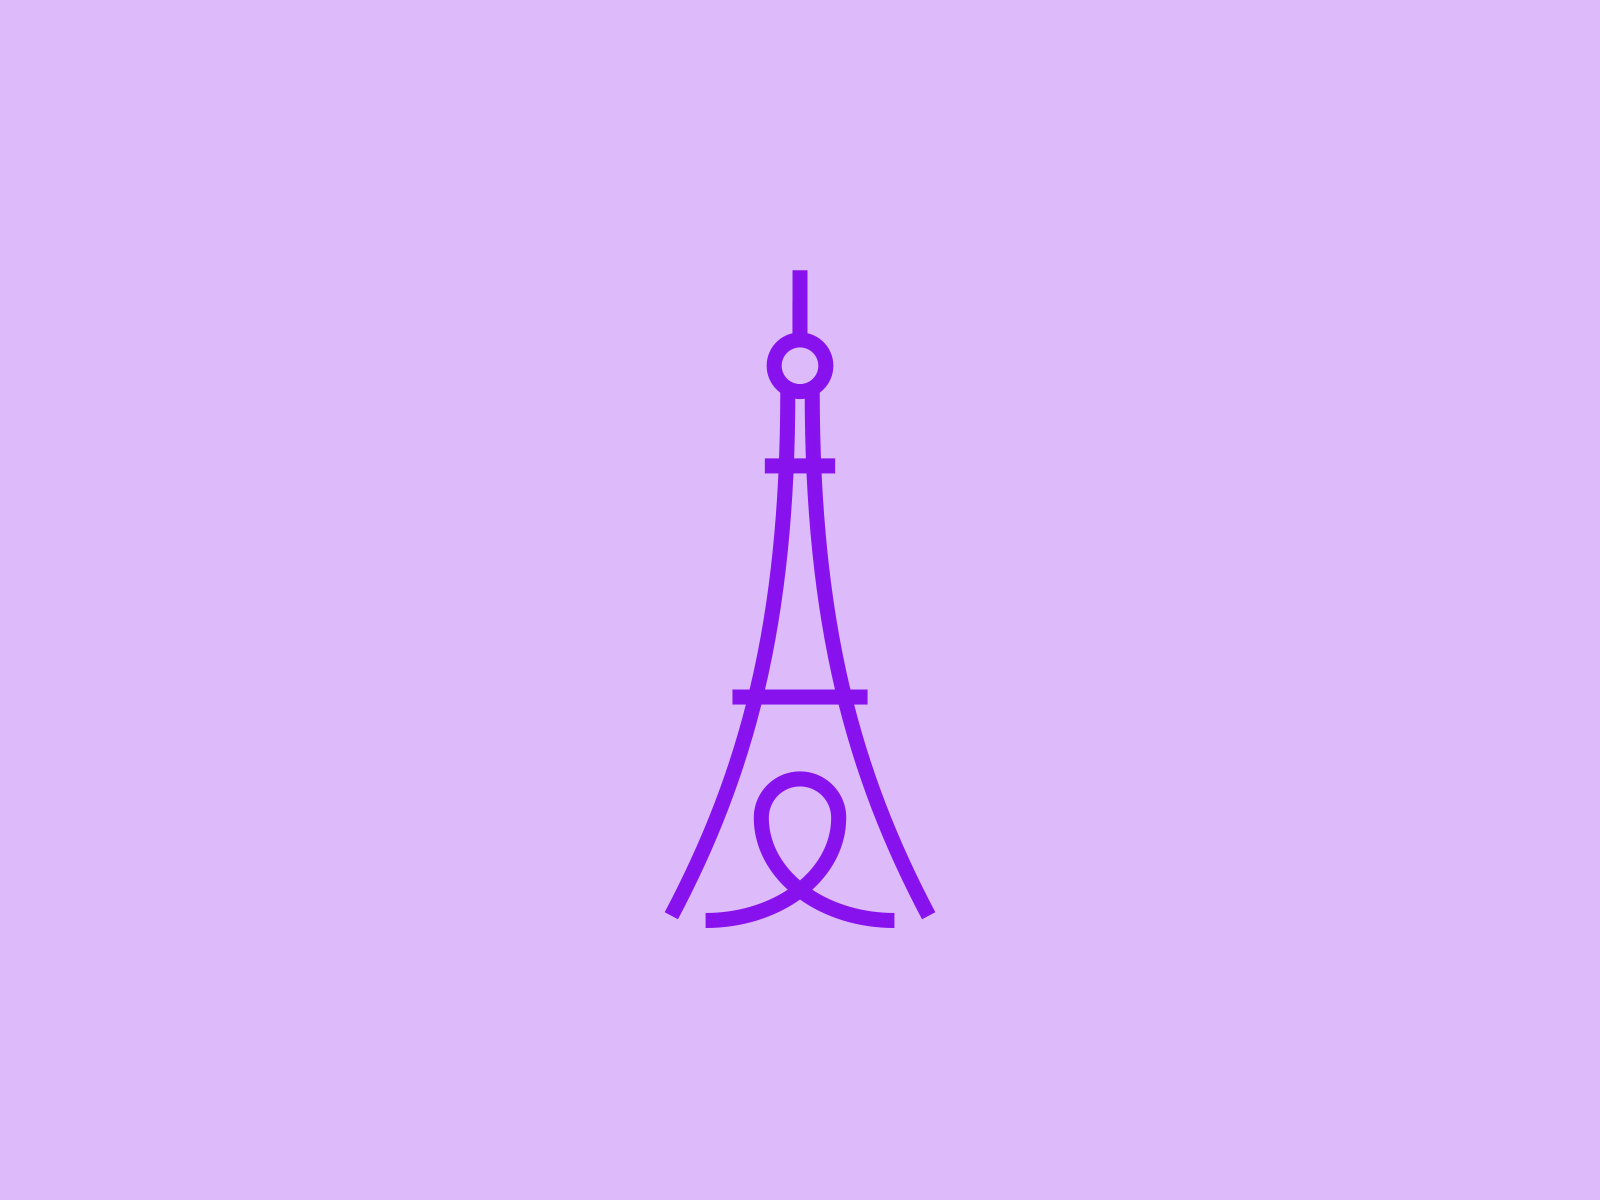 Paris pictogram for Travelspot